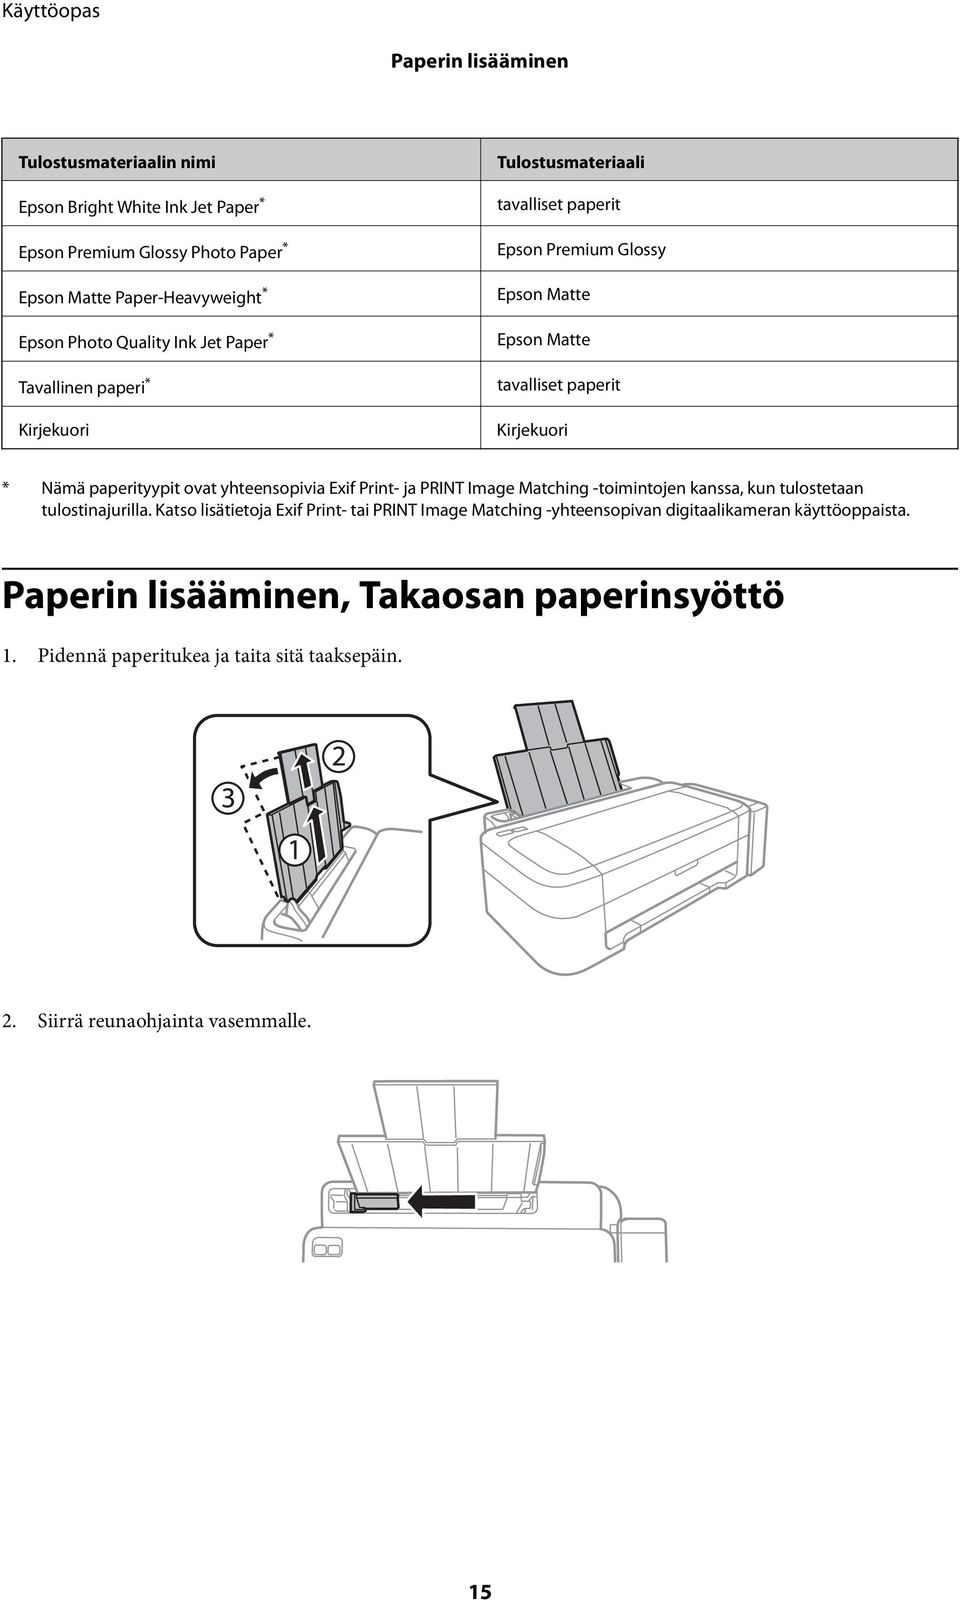 paperityypit ovat yhteensopivia Exif Print- ja PRINT Image Matching -toimintojen kanssa, kun tulostetaan tulostinajurilla.